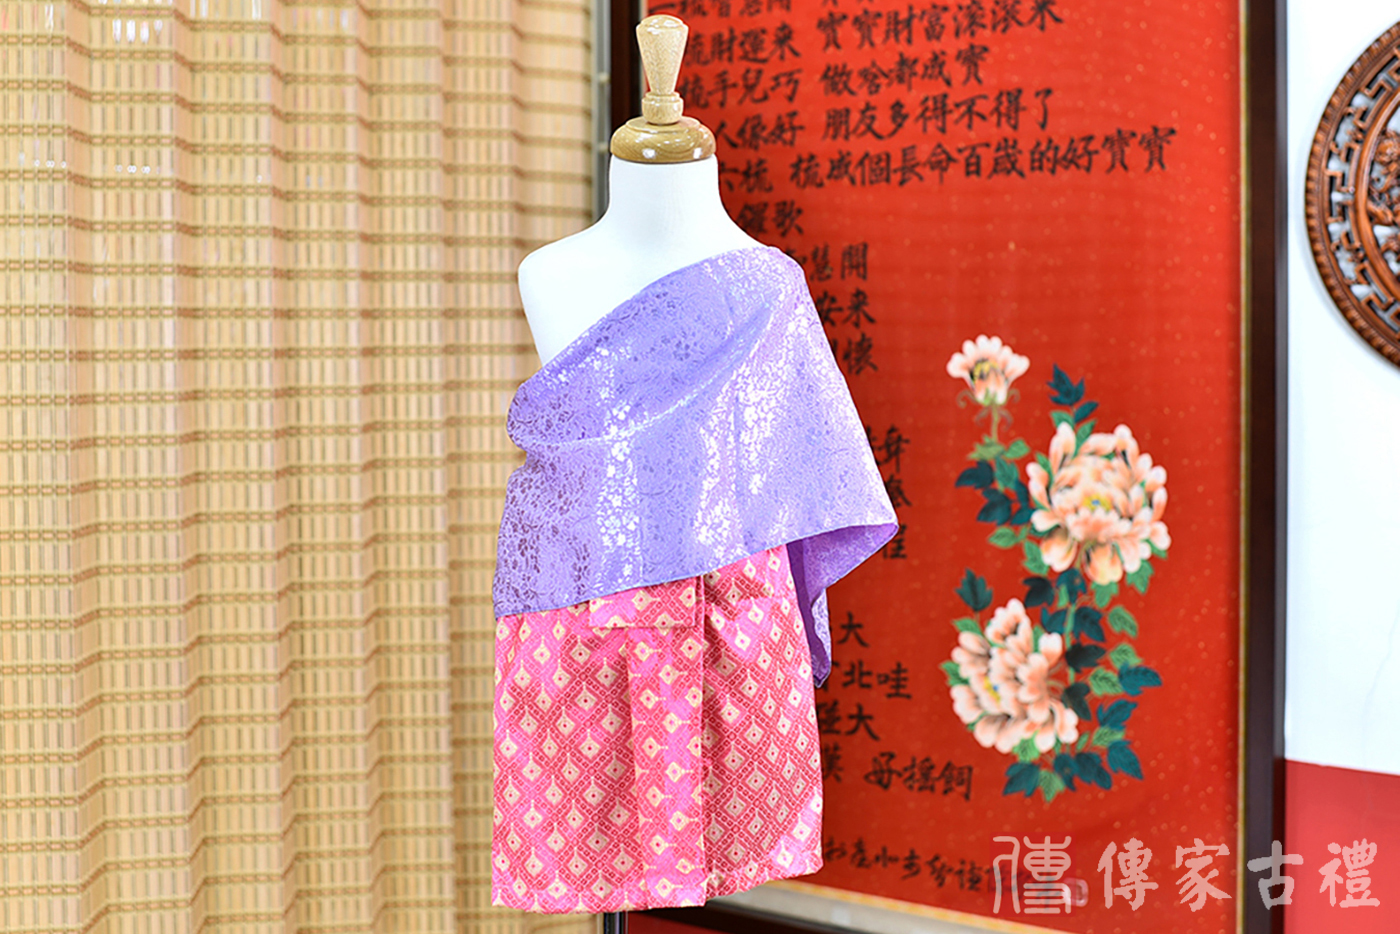 2024-02-22小孩皇室泰服古裝禮服照。柔美紫色織物的上衣與粉紅色繁花盛開的小方格狀圖樣裙裝的泰式古裝禮服。照片集